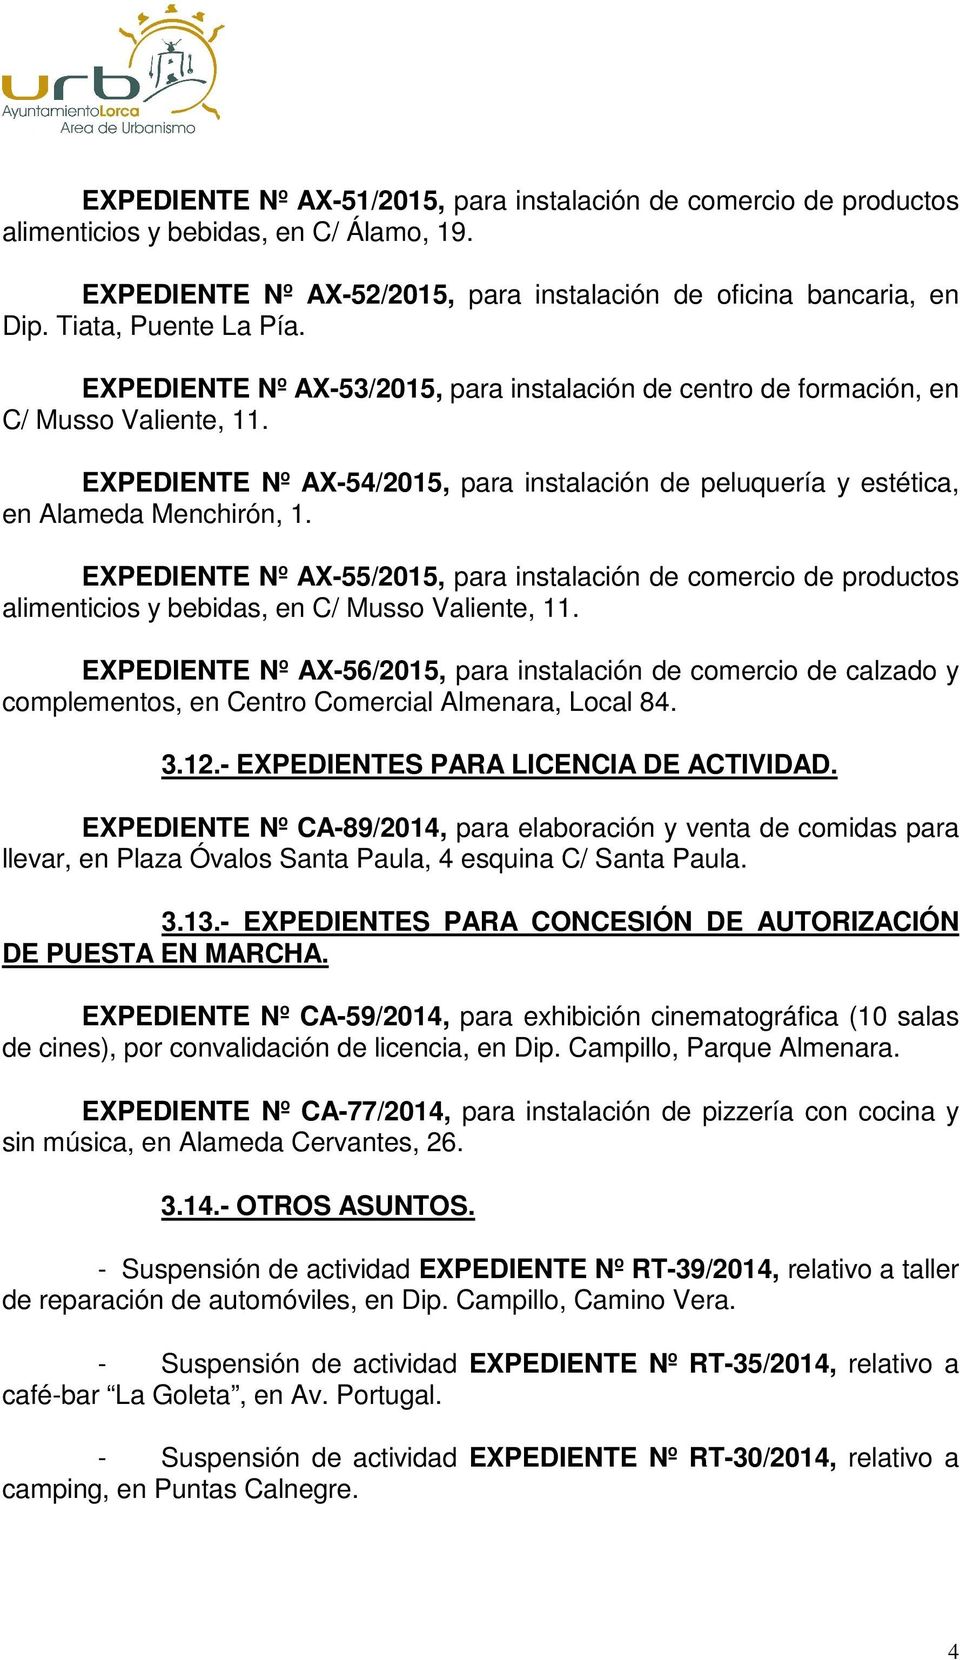 EXPEDIENTE Nº AX-54/2015, para instalación de peluquería y estética, en Alameda Menchirón, 1.